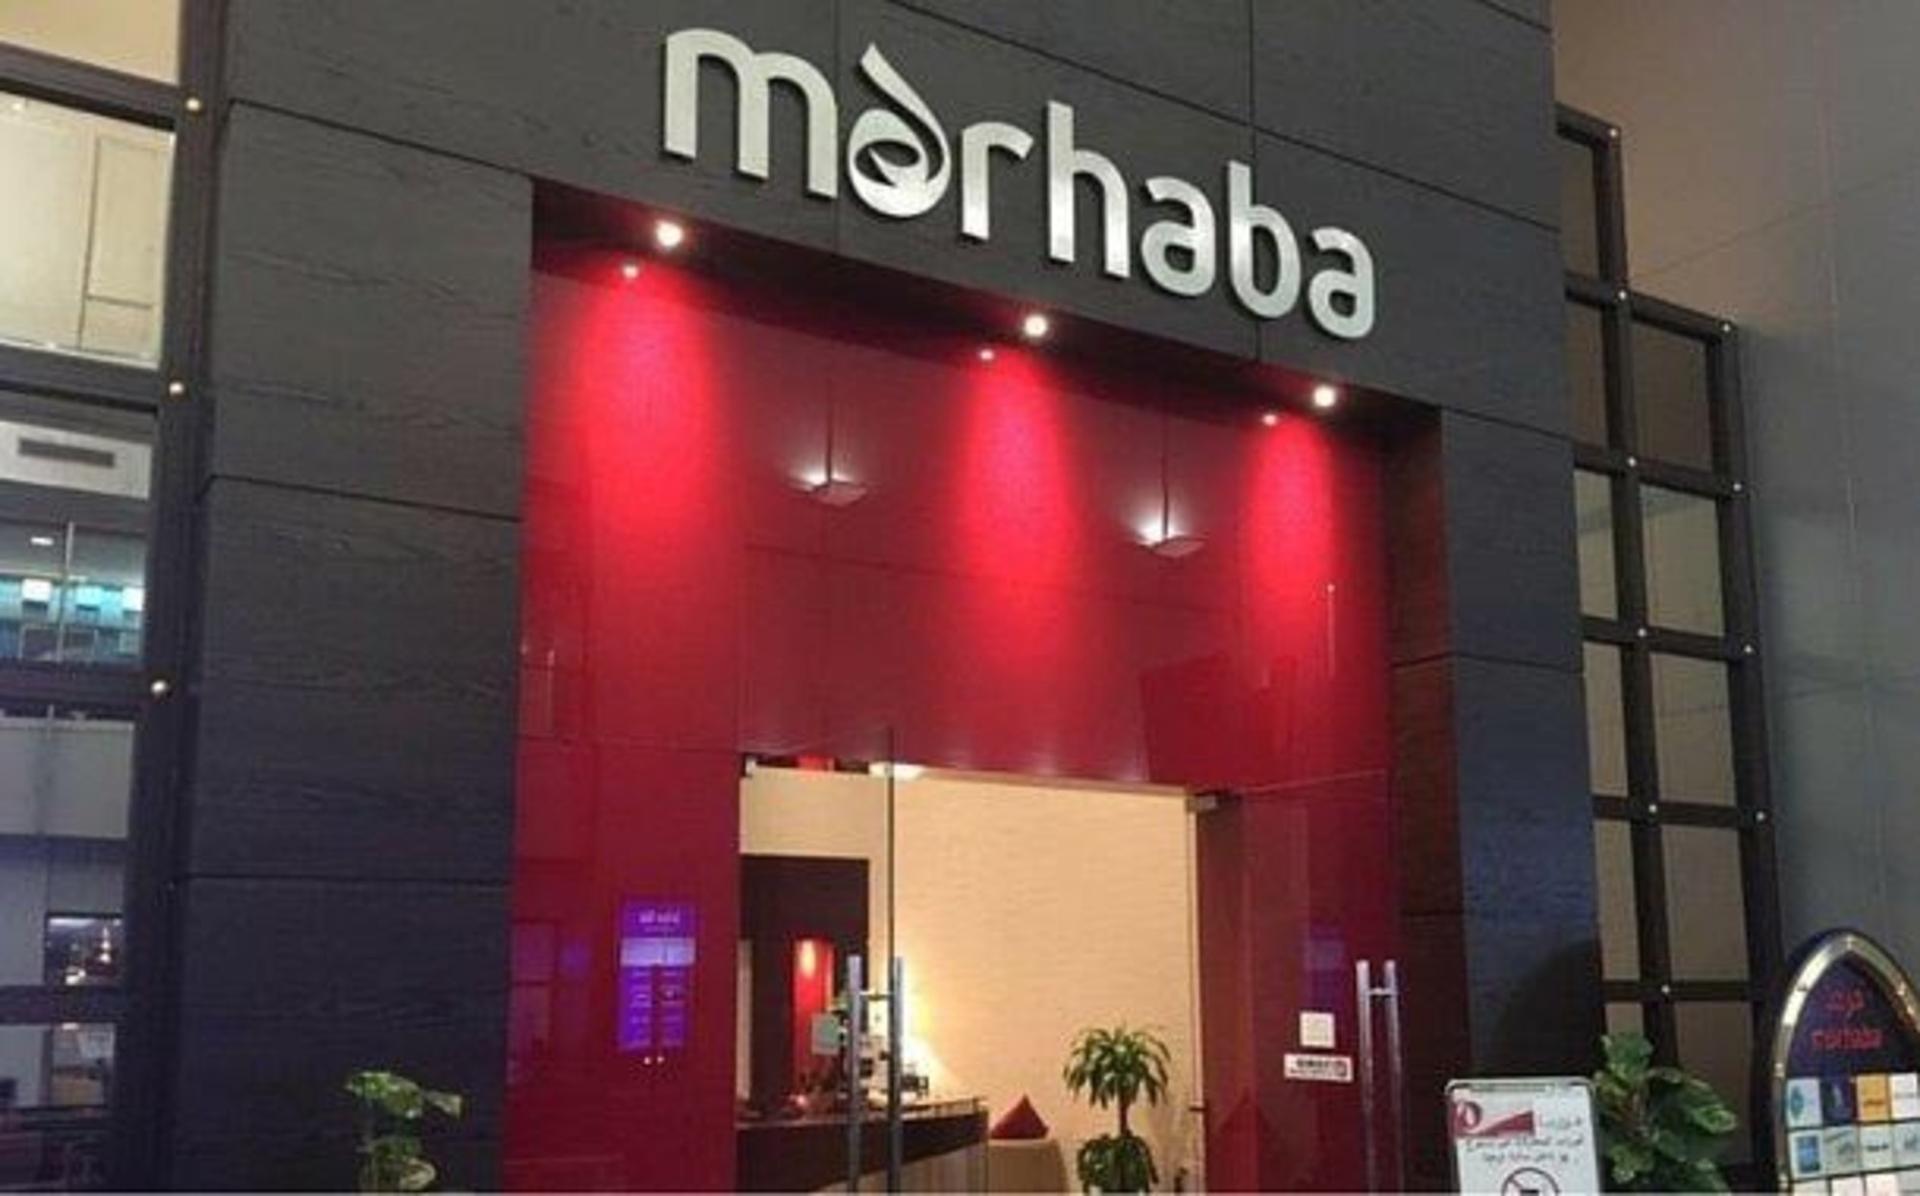 Marhaba Lounge image 20 of 64